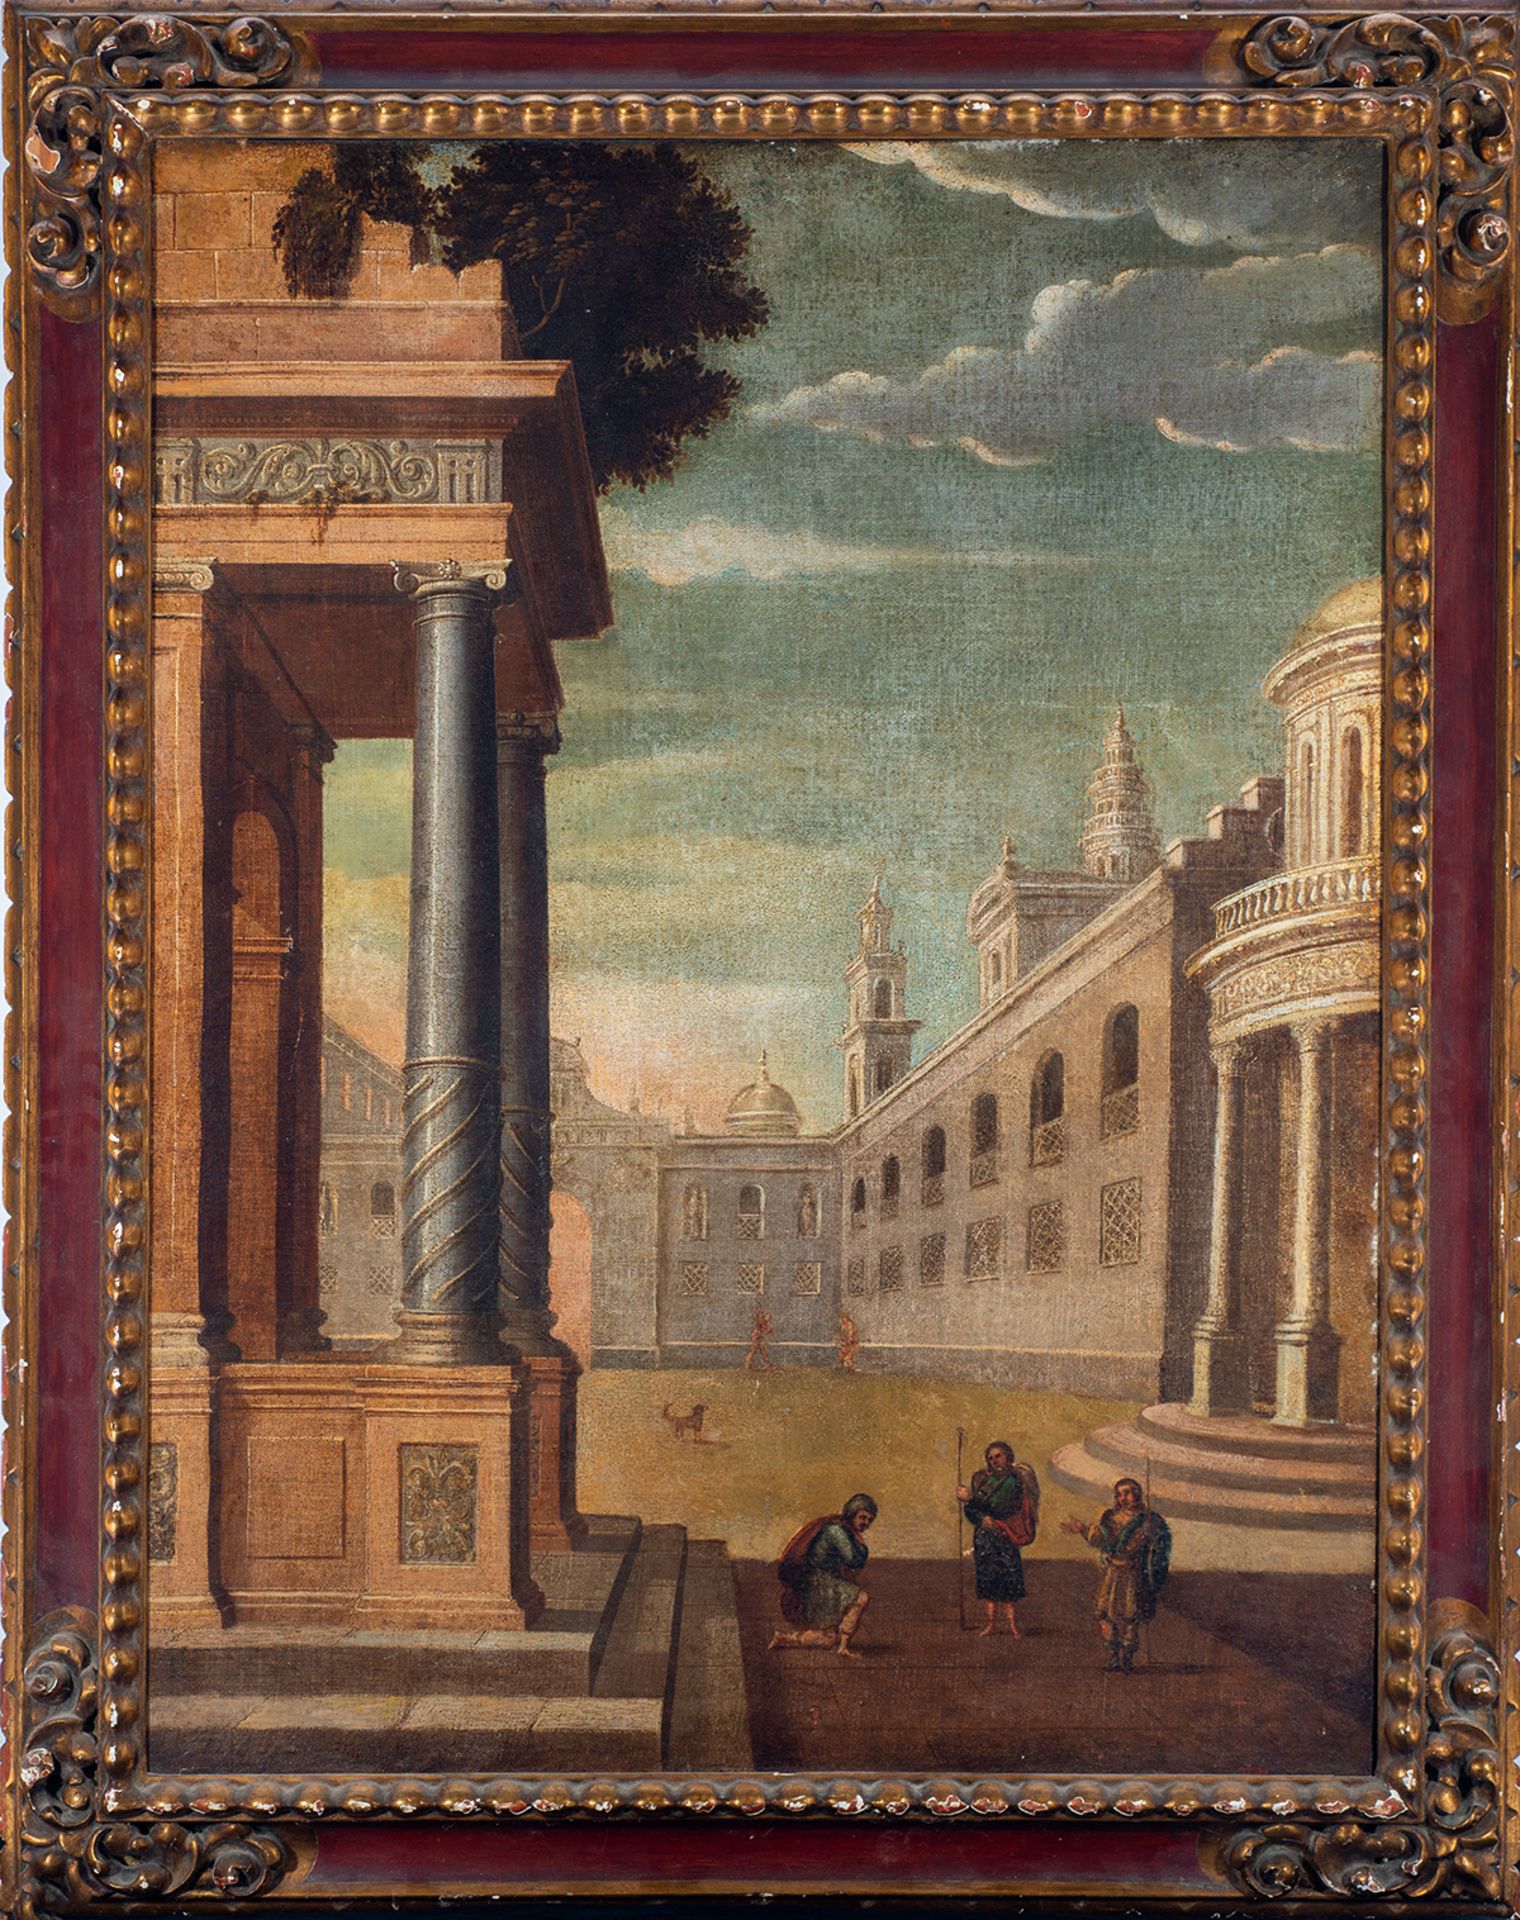 Capriccio, 17th century Italian school